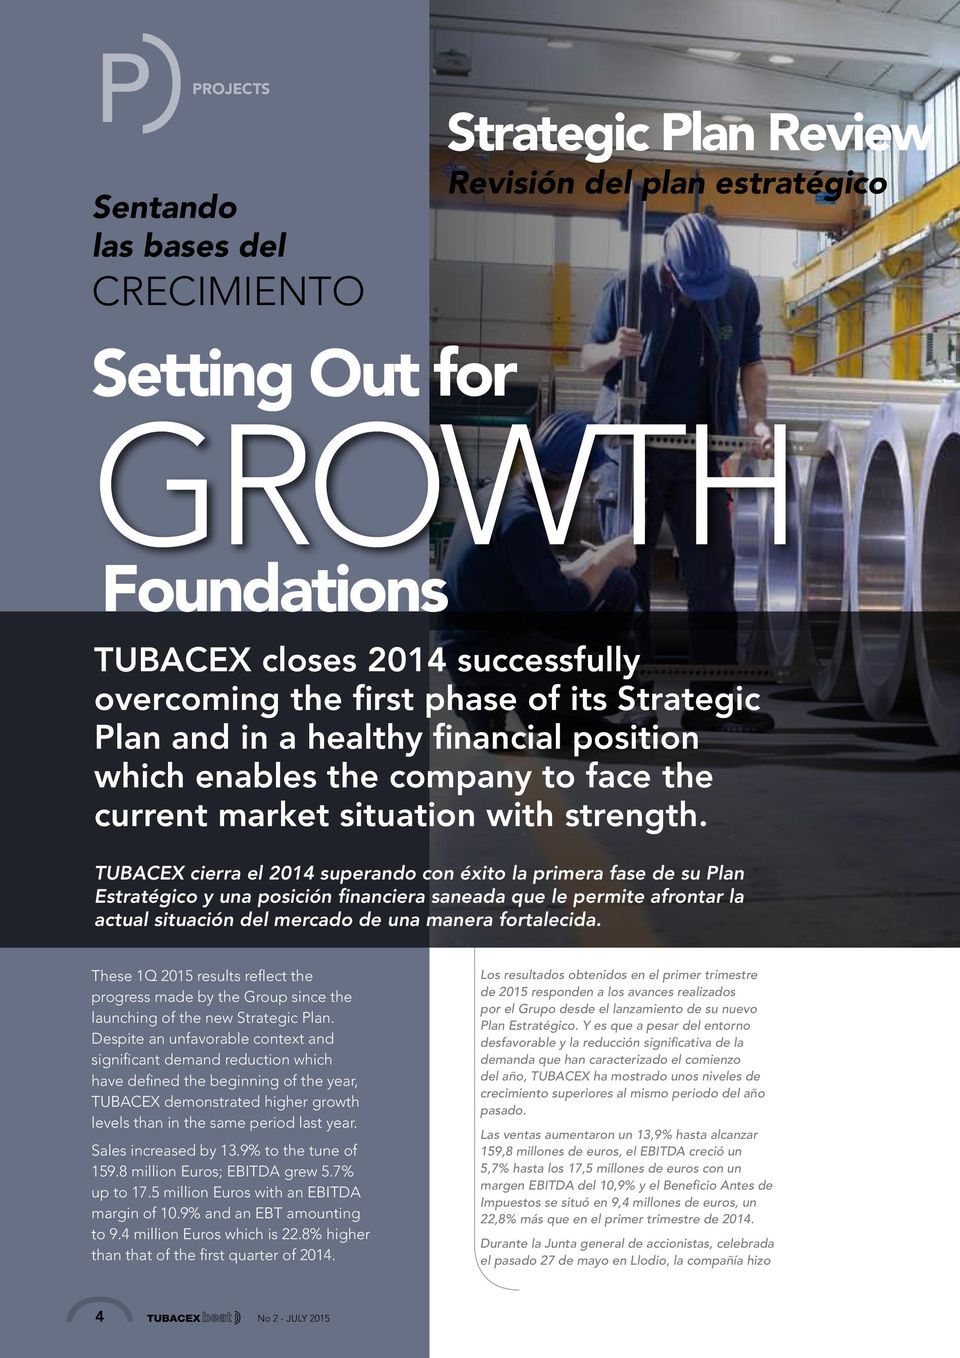 TUBACEX cierra el 2014 superando con éxito la primera fase de su Plan Estratégico y una posición financiera saneada que le permite afrontar la actual situación del mercado de una manera fortalecida.